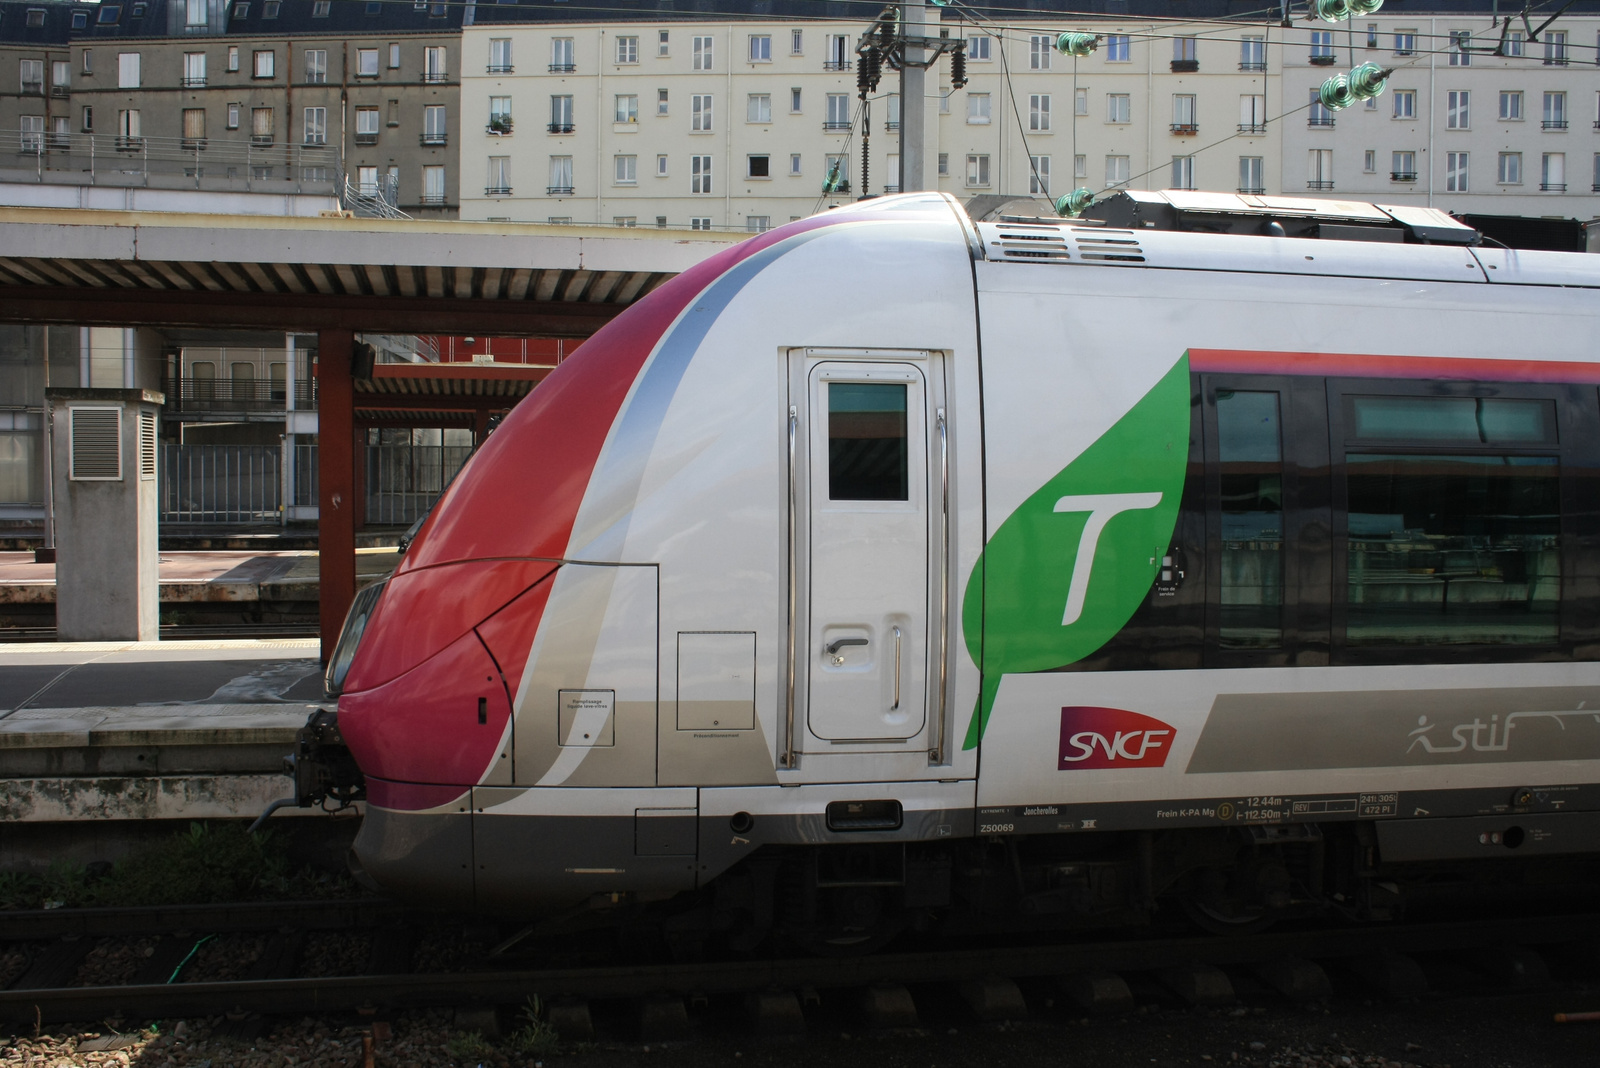 SNCF Francilien 35 H @Paris Gare du Nord